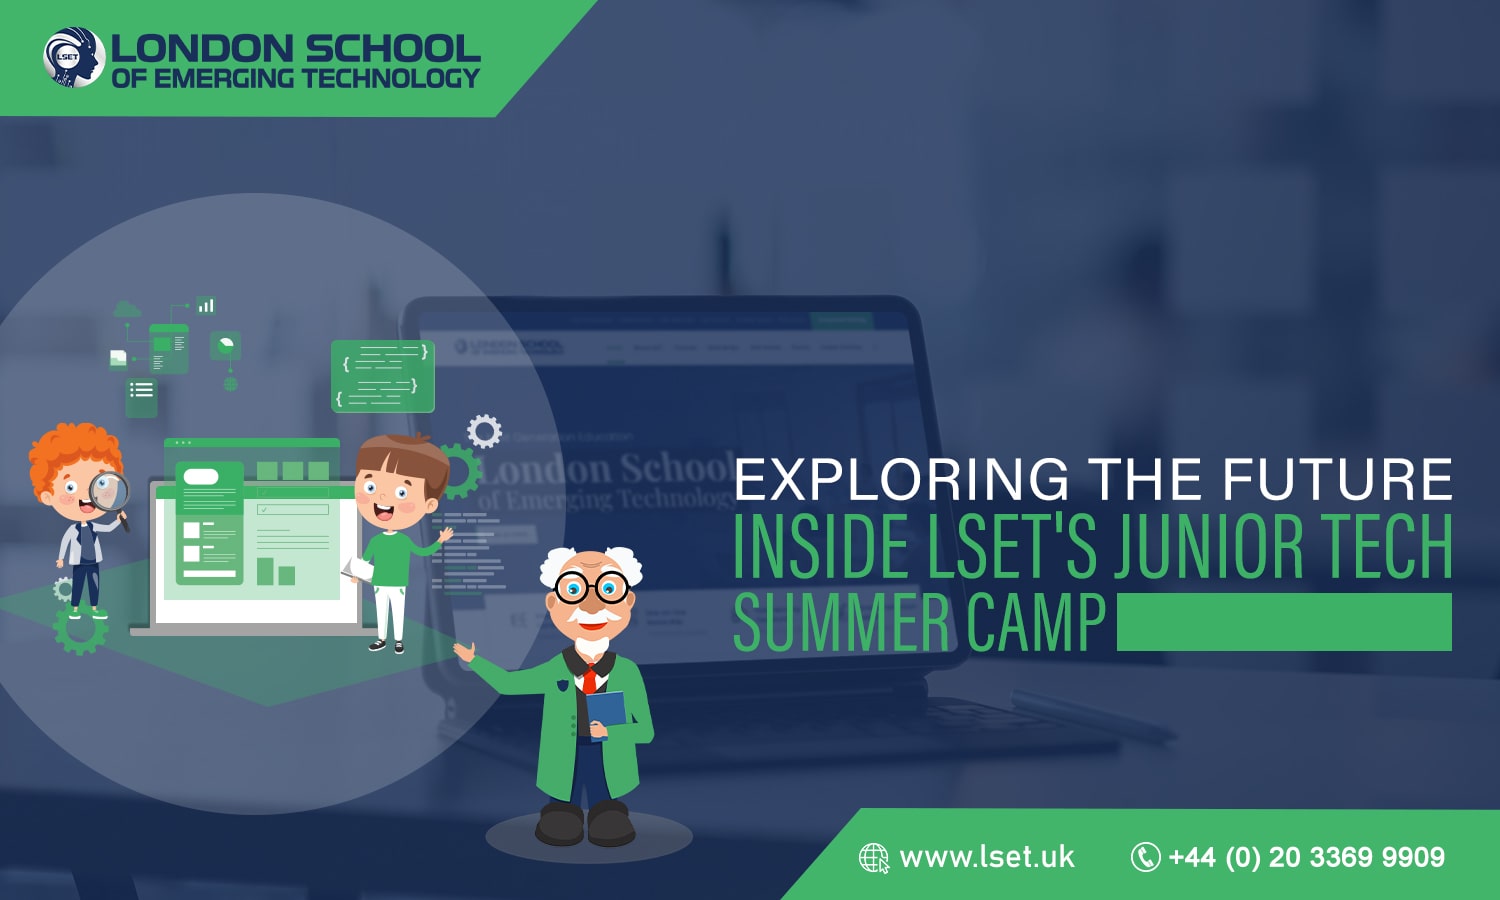 LSET Junior Tech Summer Camp